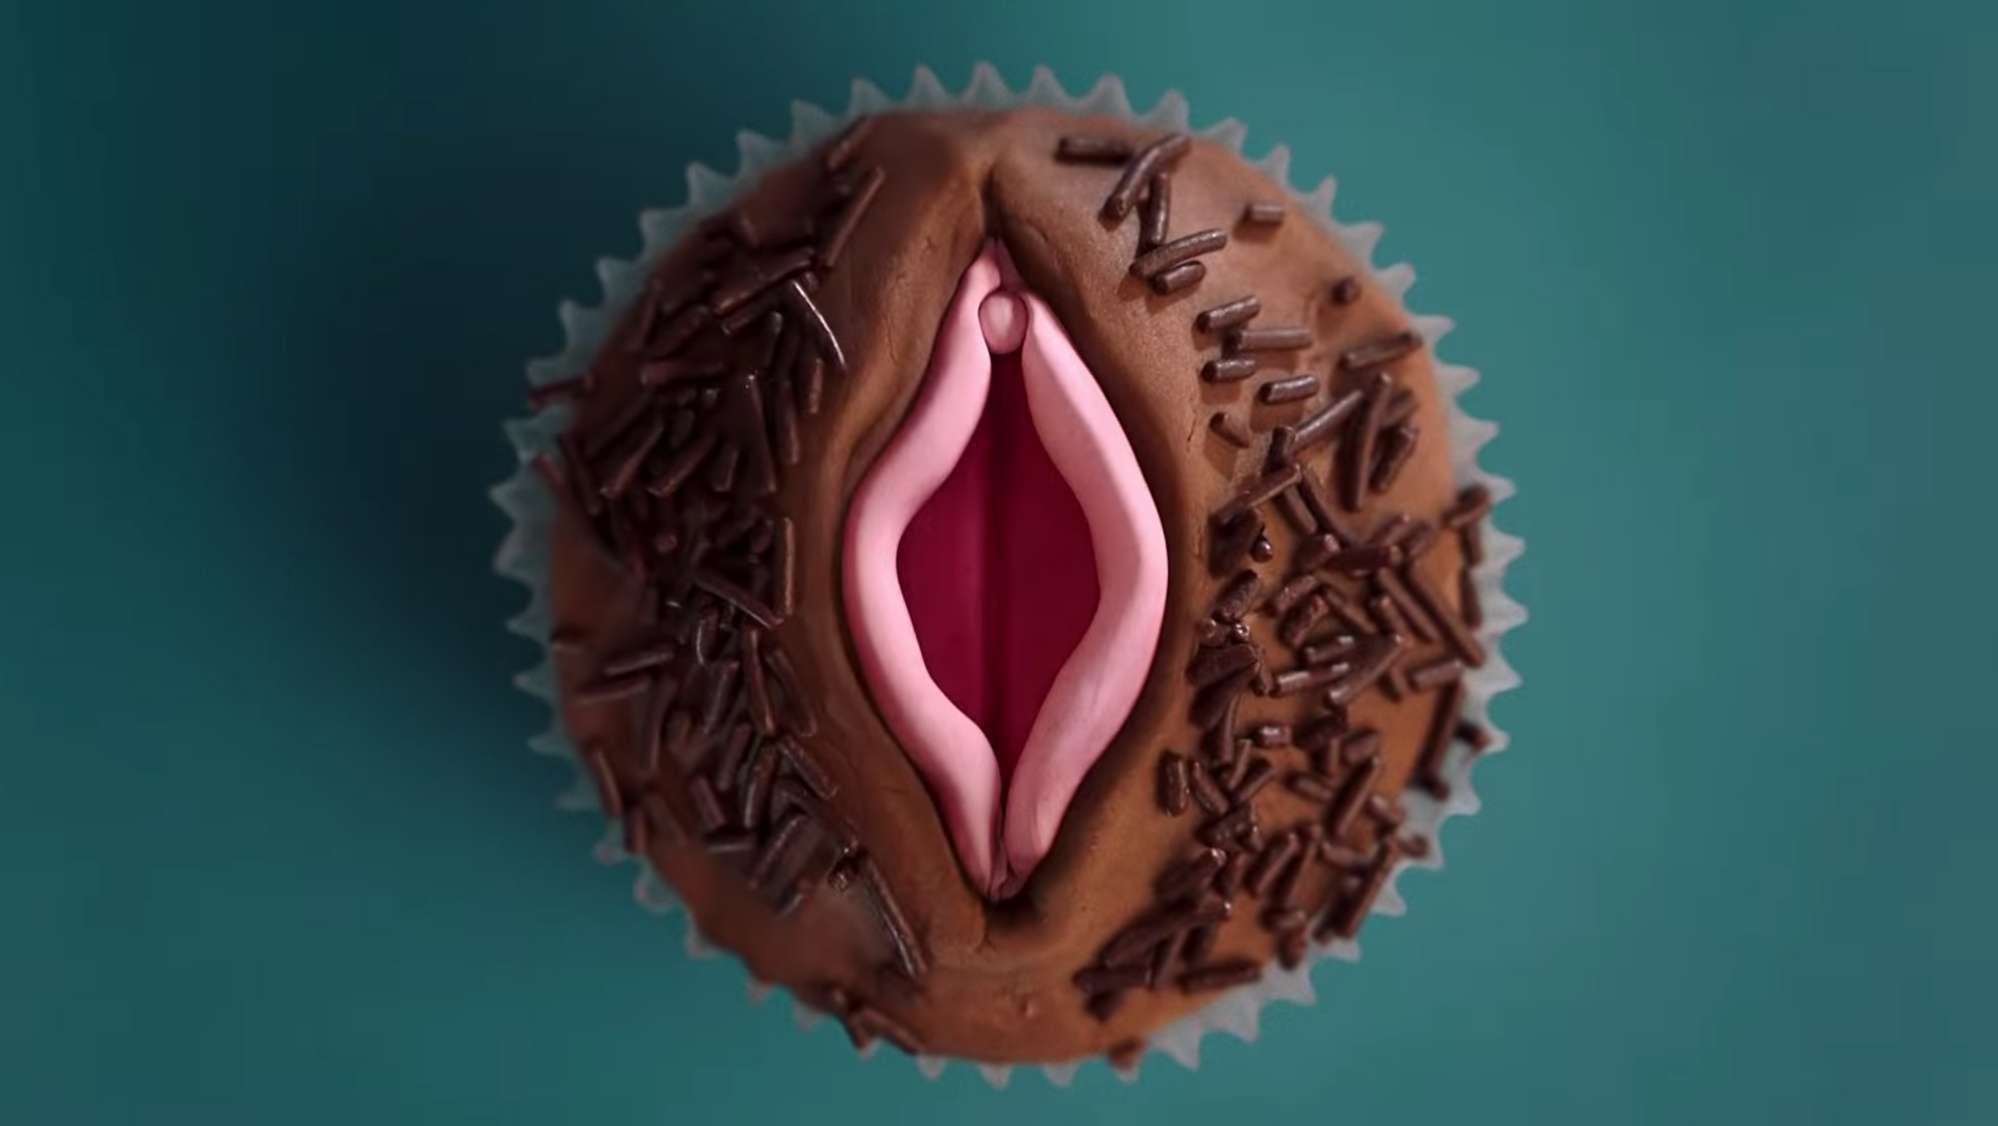 VIVA LA VULVA: реклама прокладок с поющими вагины разорвала сеть на клочки - фото 414209